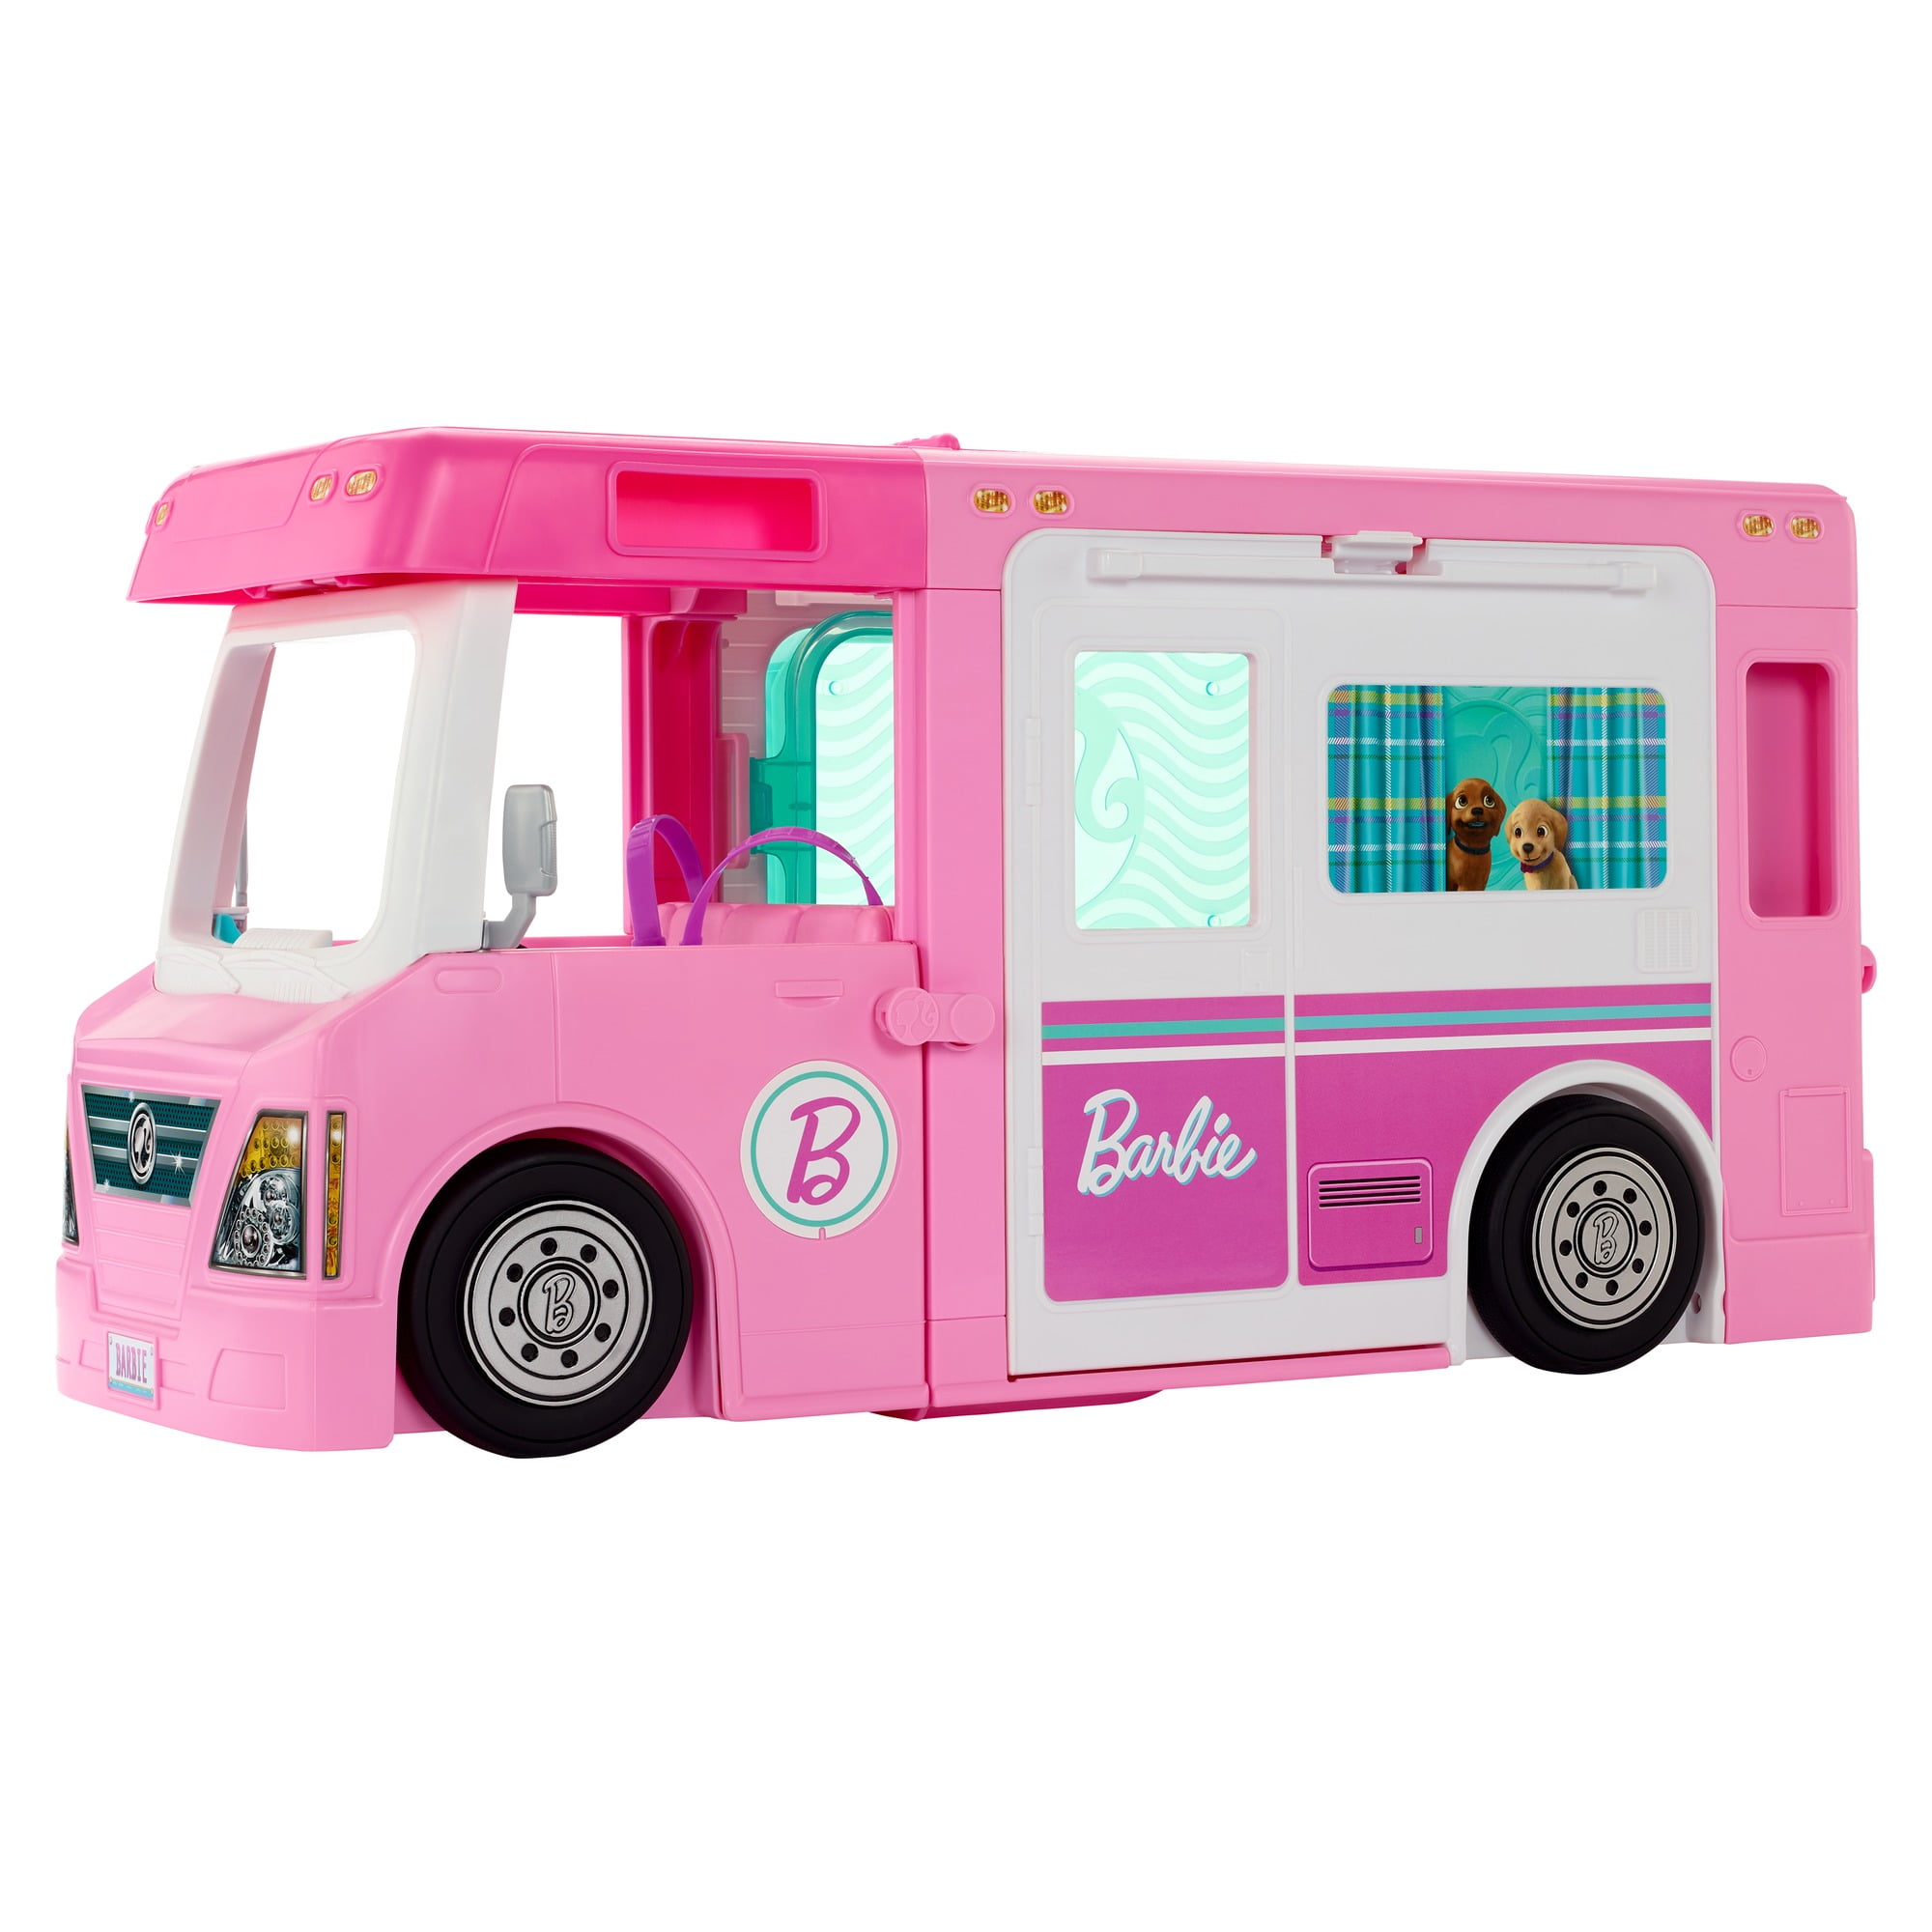 Verslaafd stopverf scherp Barbie Dream Camper Pop-up Play Tent for Children with Carrying Case -  Walmart.com